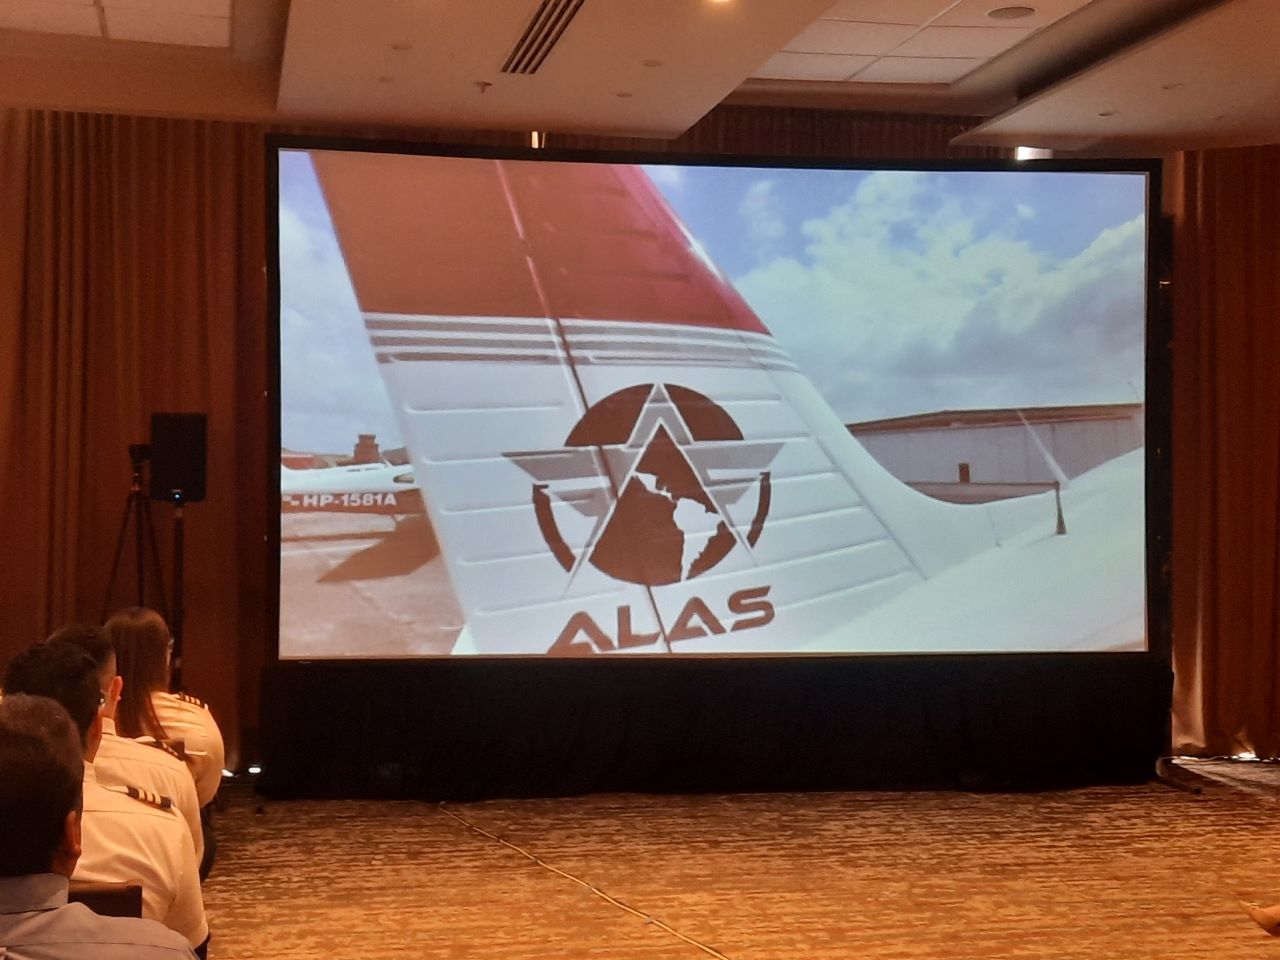 La Academia Latinoamericana de Aviación (ALAS) cumple 10 años